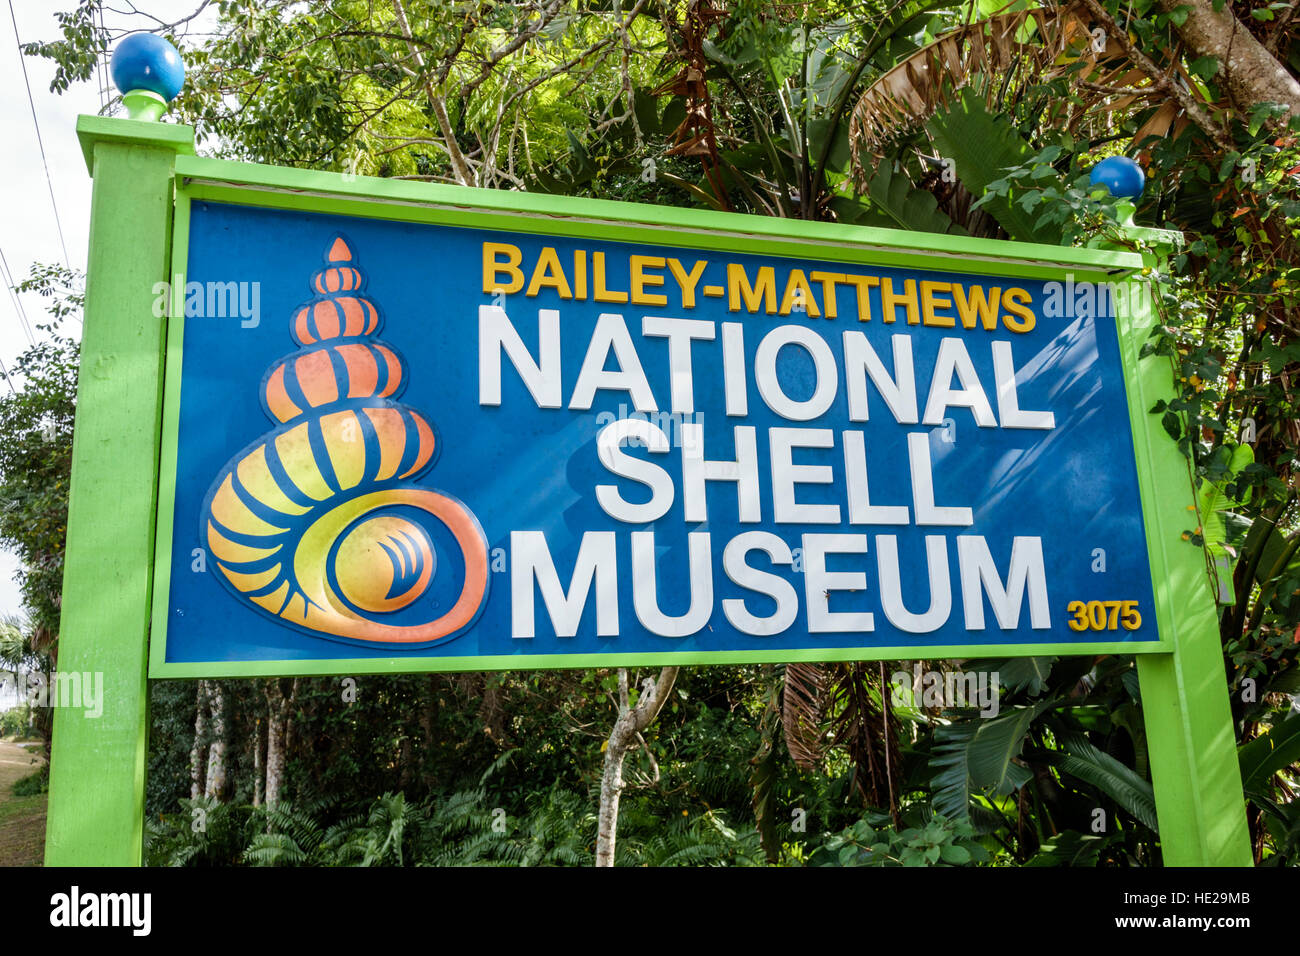 Florida Sanibel Island,Bailey-Matthews National Shell Museum,panneau,FL161129255 Banque D'Images